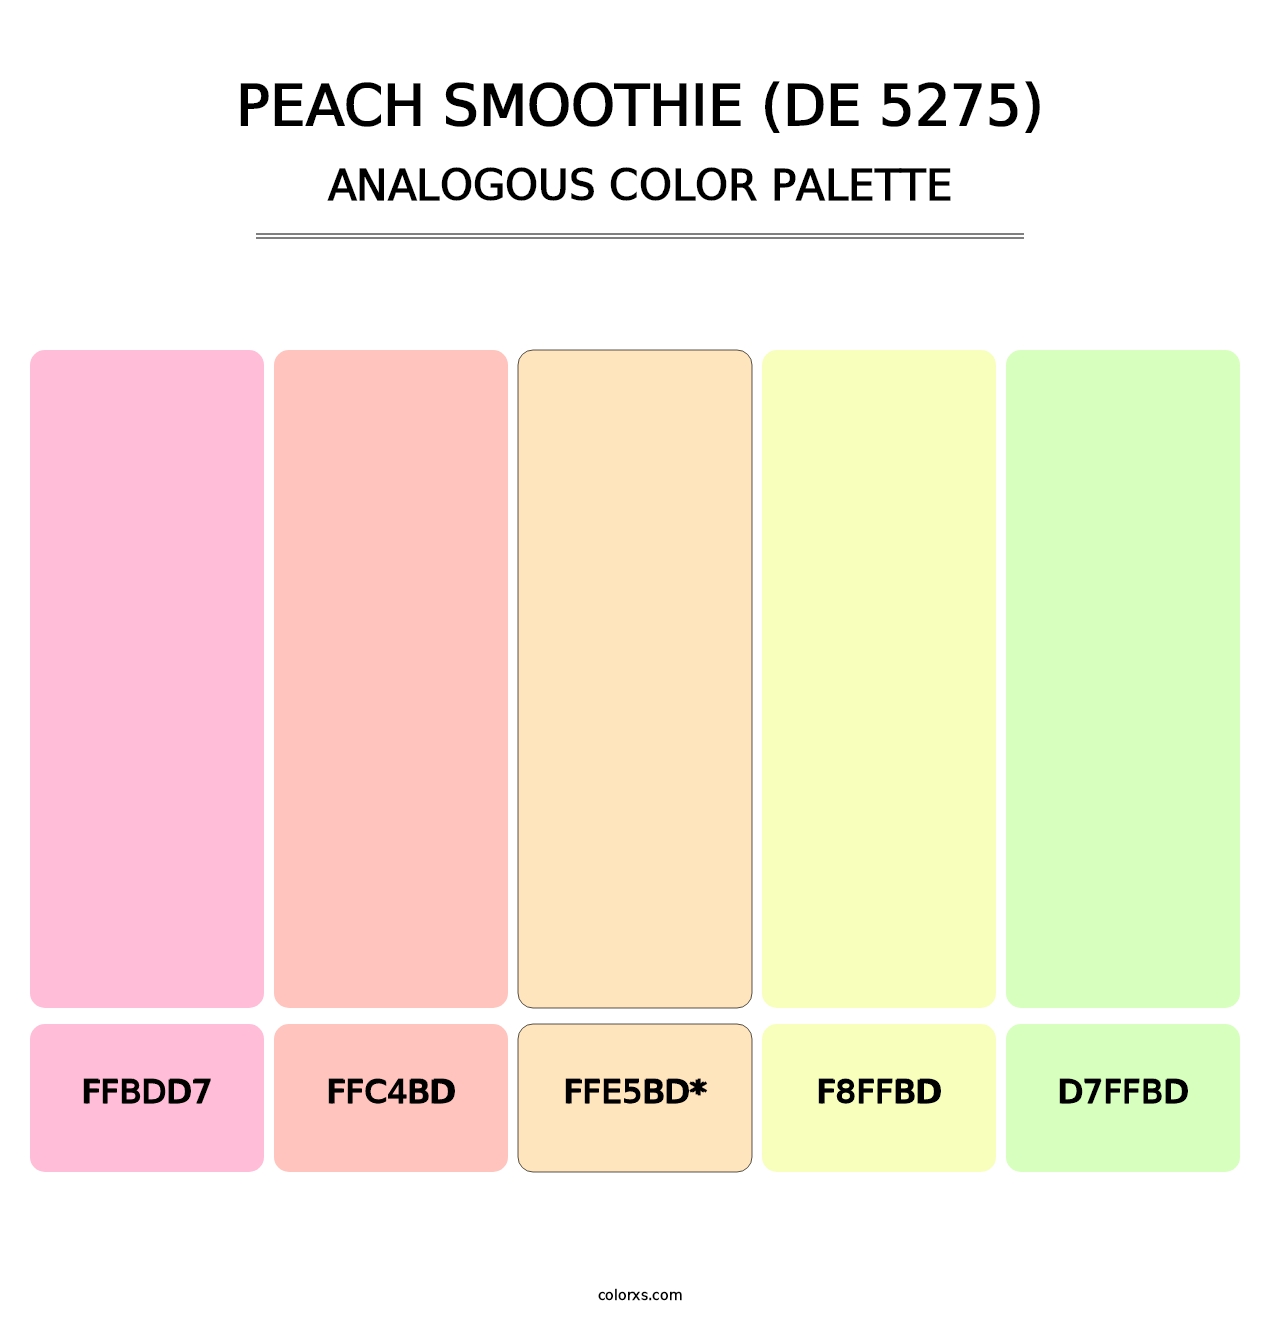 Peach Smoothie (DE 5275) - Analogous Color Palette